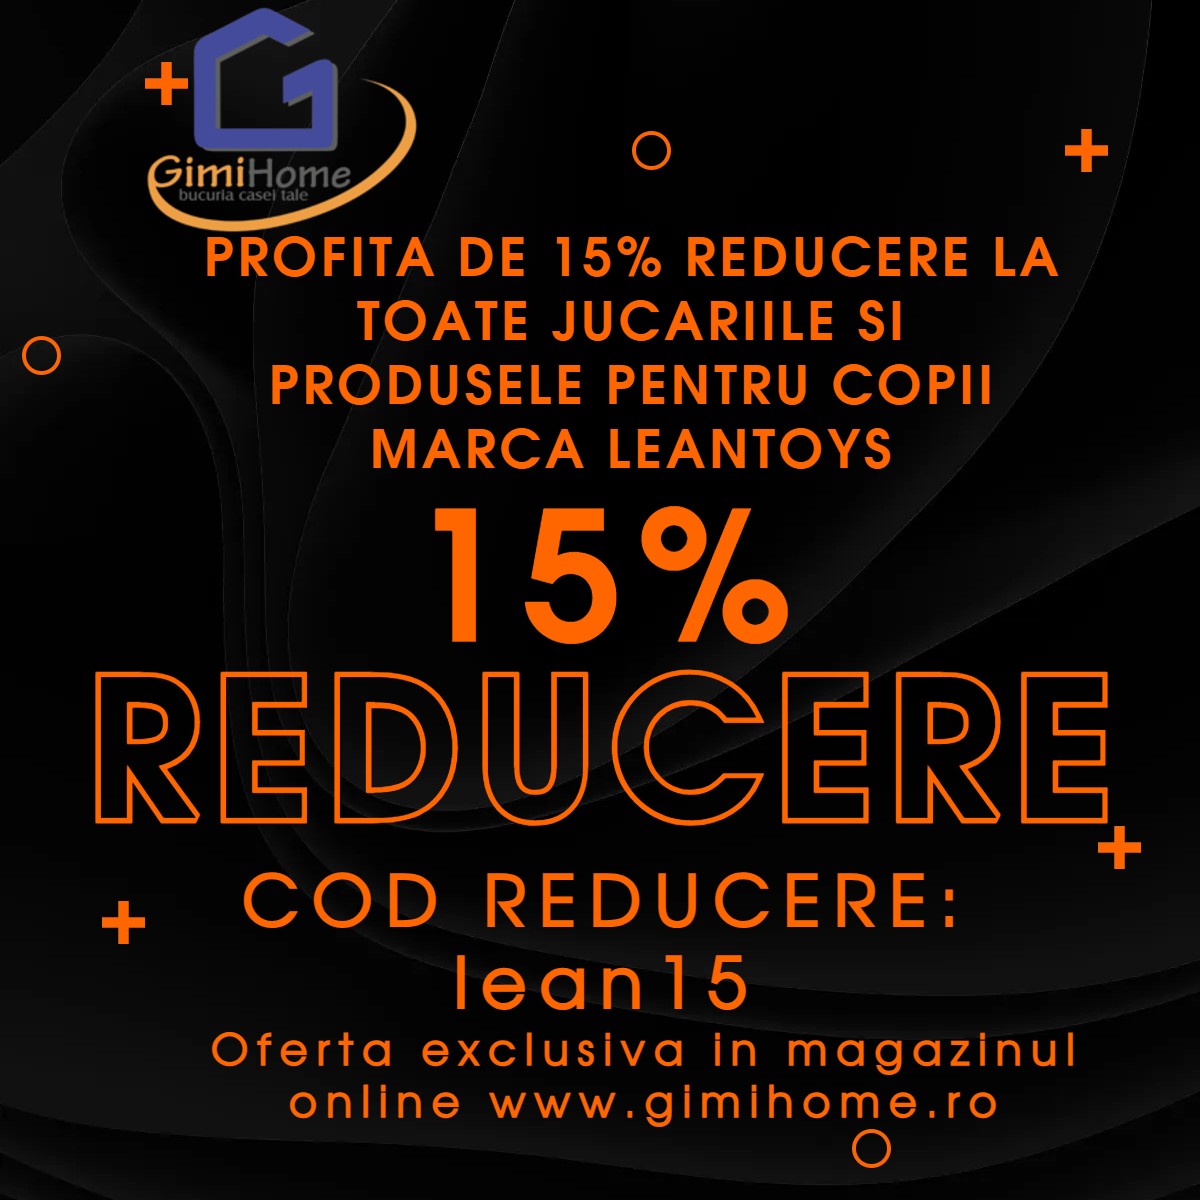 Gimihome - REDUCERE DE 15% LA TOATE PRODUSELE DIN MARCA LEANTOYS, EXCLUSIV PE WWW.GIMIHOME.RO – Cod reducere: lean15